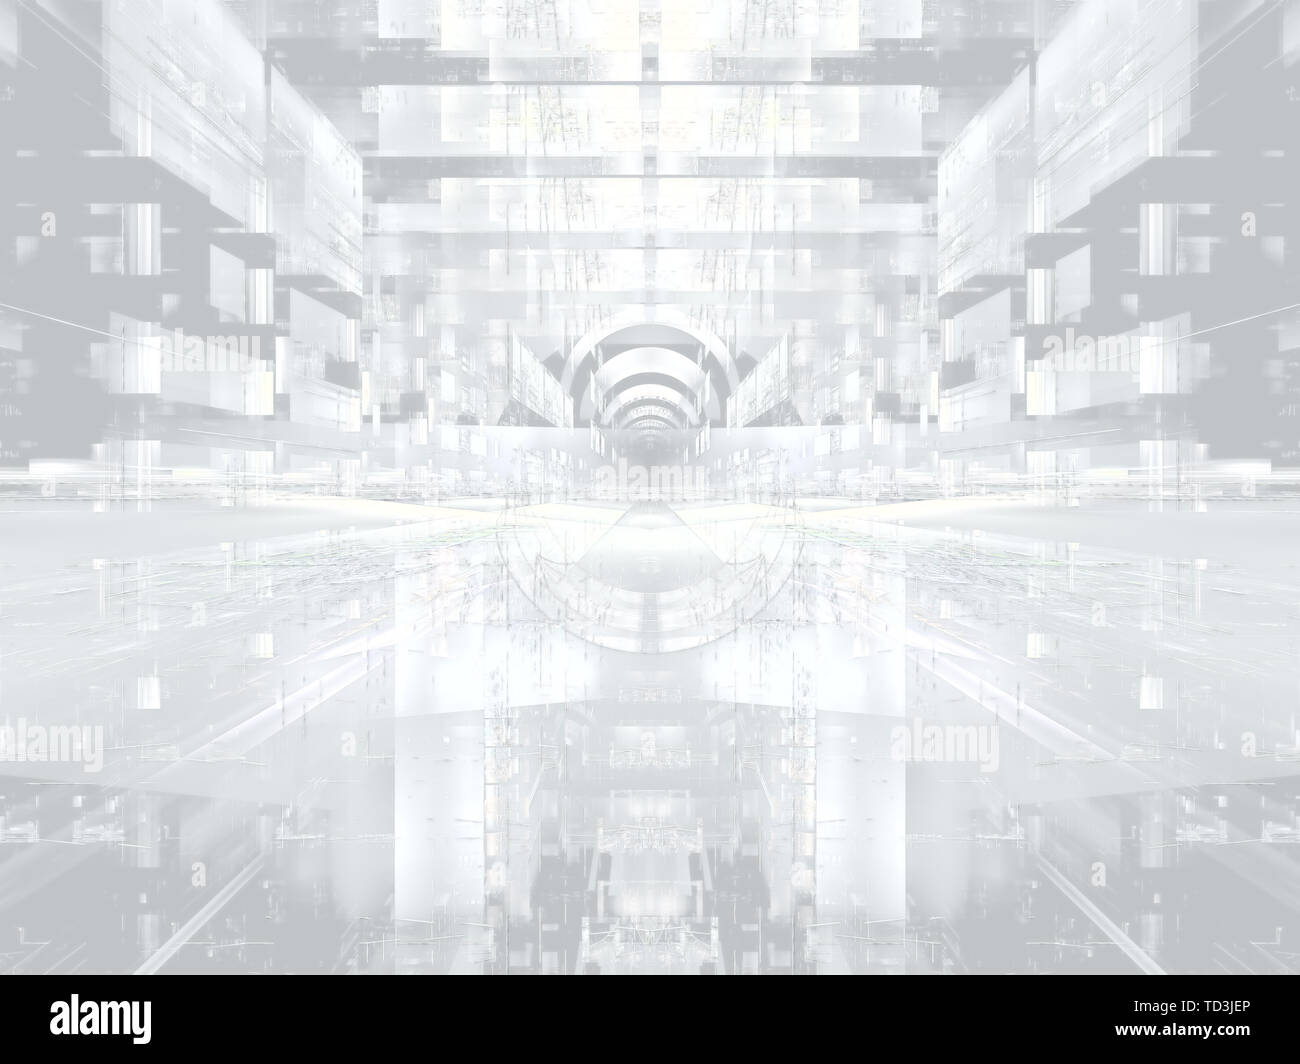 Arrière-plan de réalité virtuelle - abstract image générée numériquement Banque D'Images